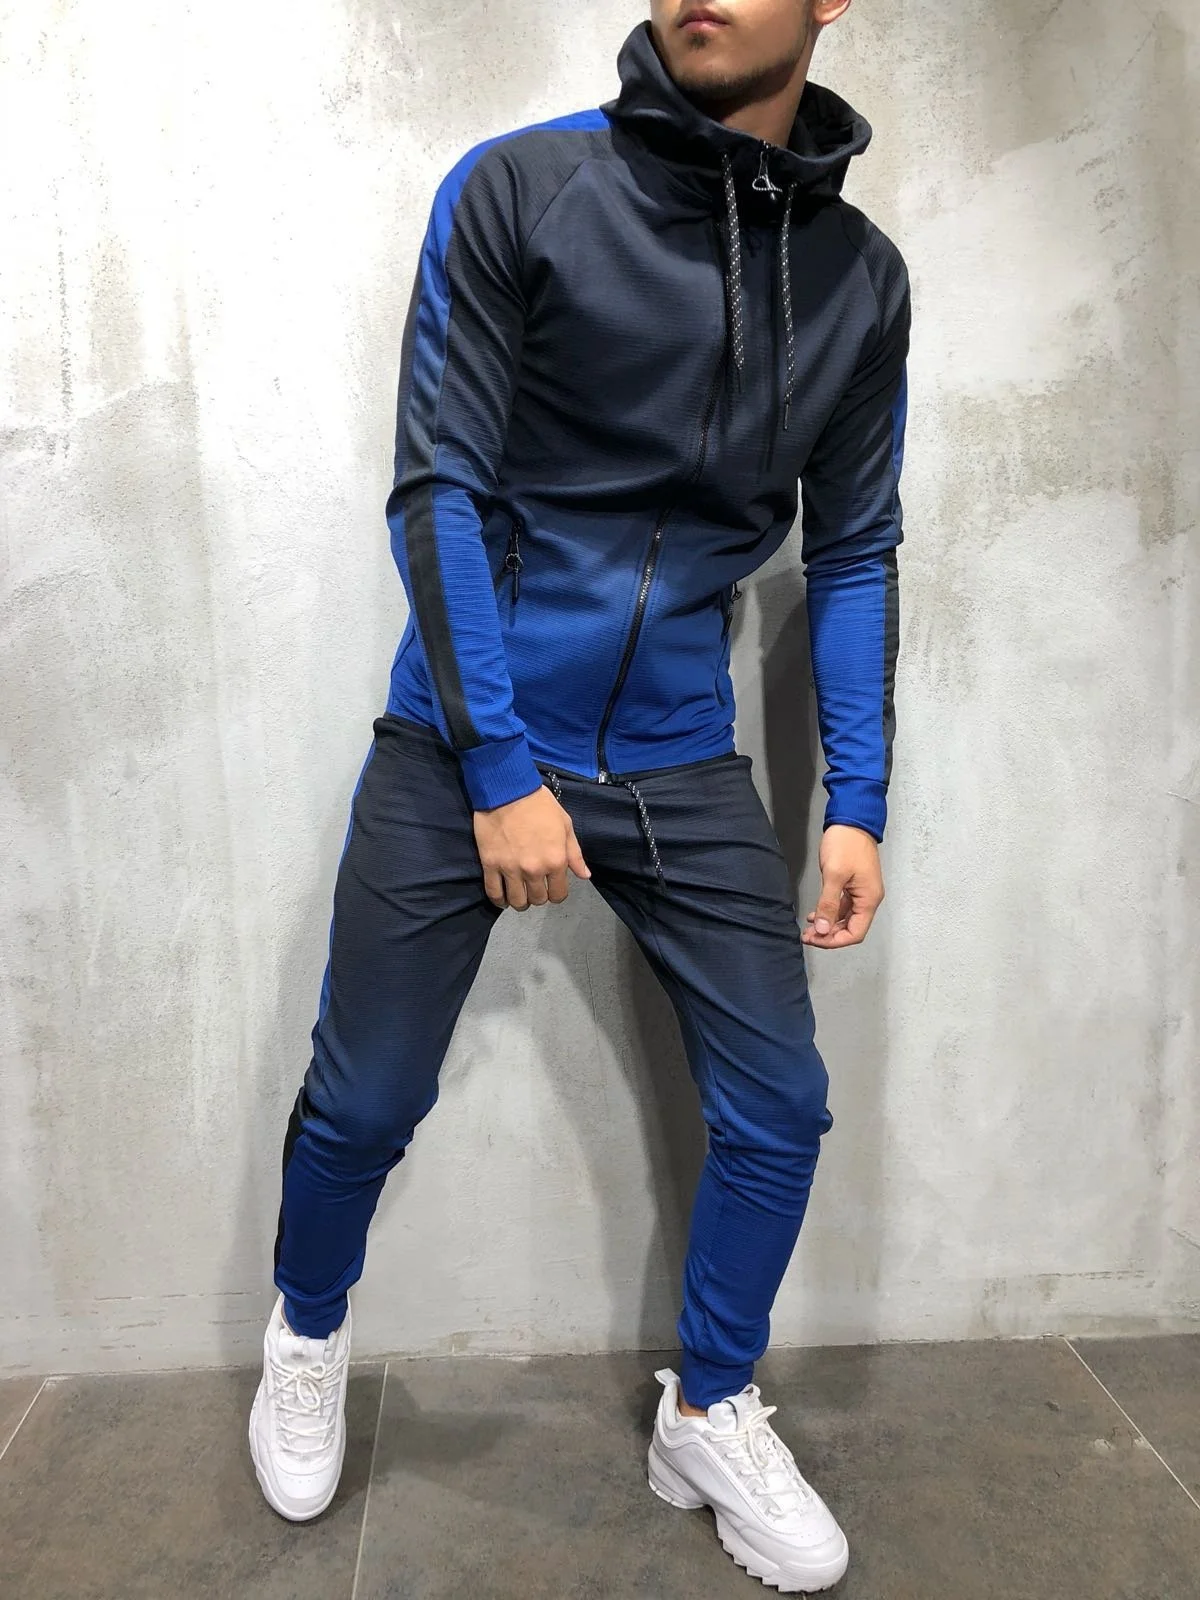 ZOGAA Men's Sportswear Two Piece Set Mens Casual Hooded Sports Wear Men's Tracksuit Training Sweat Suit Men Track Suit M-3XL - Цвет: Синий